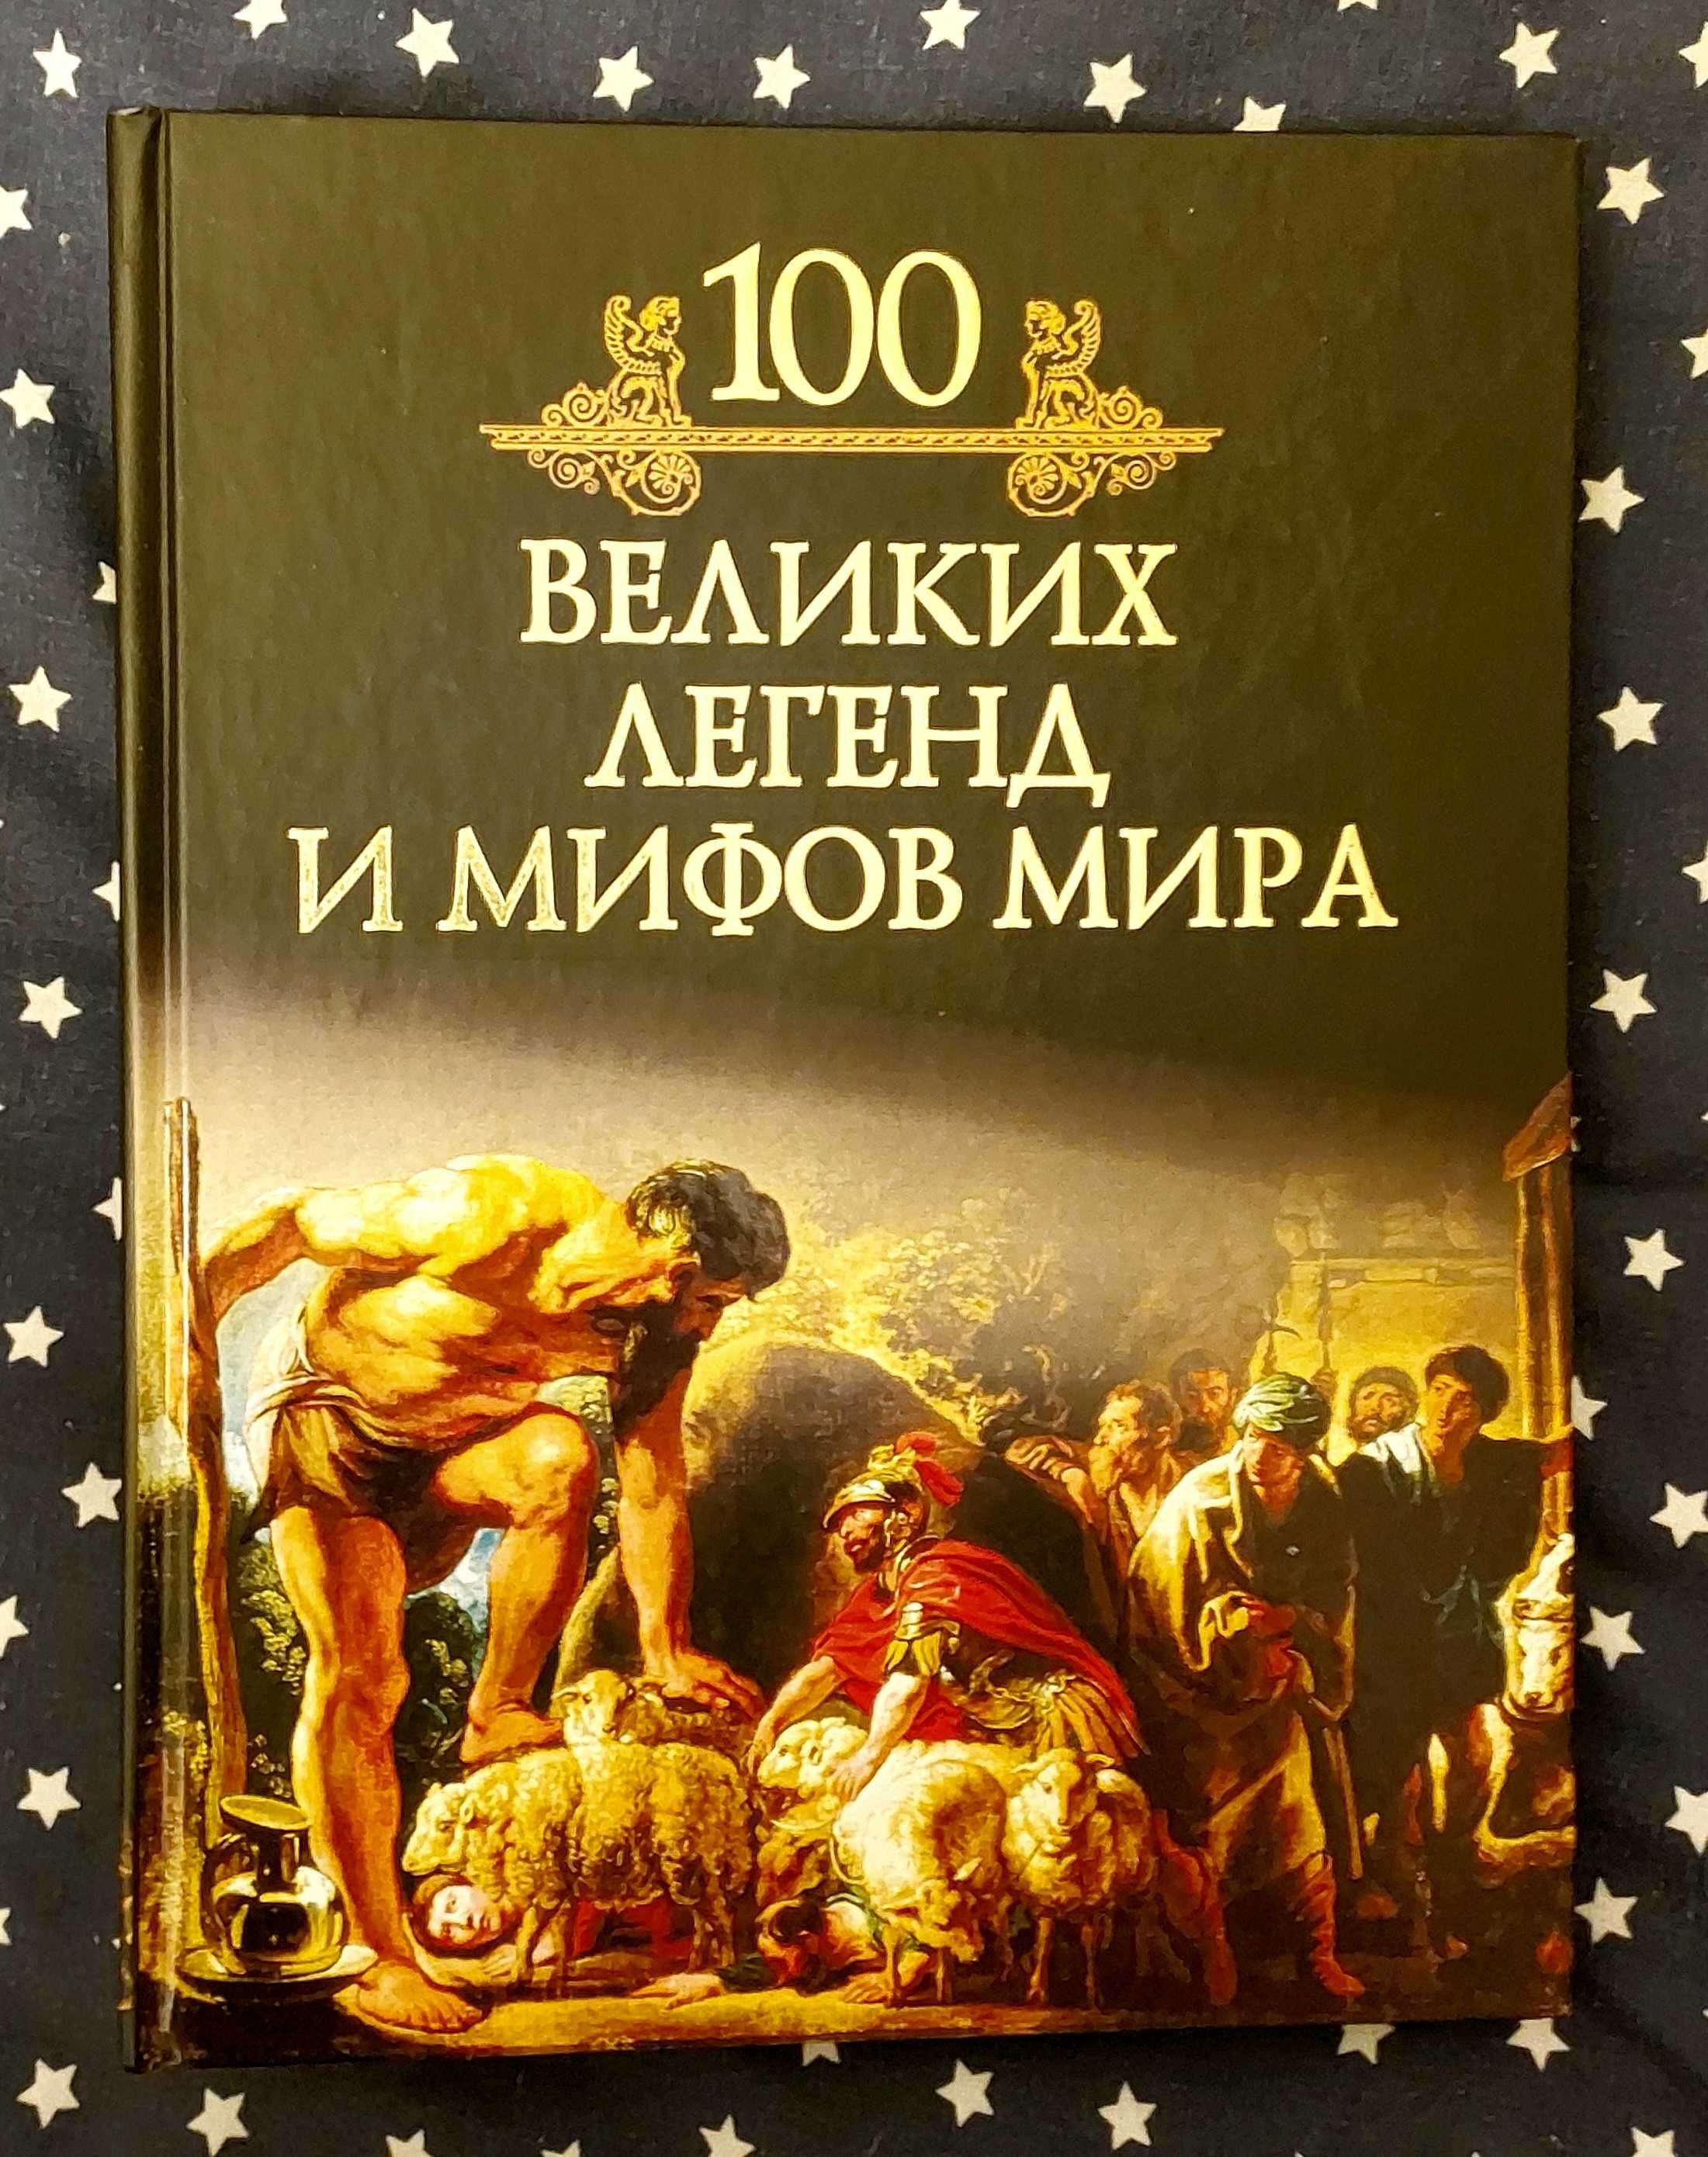 Книги: 100 Великих легенд и мифов мира